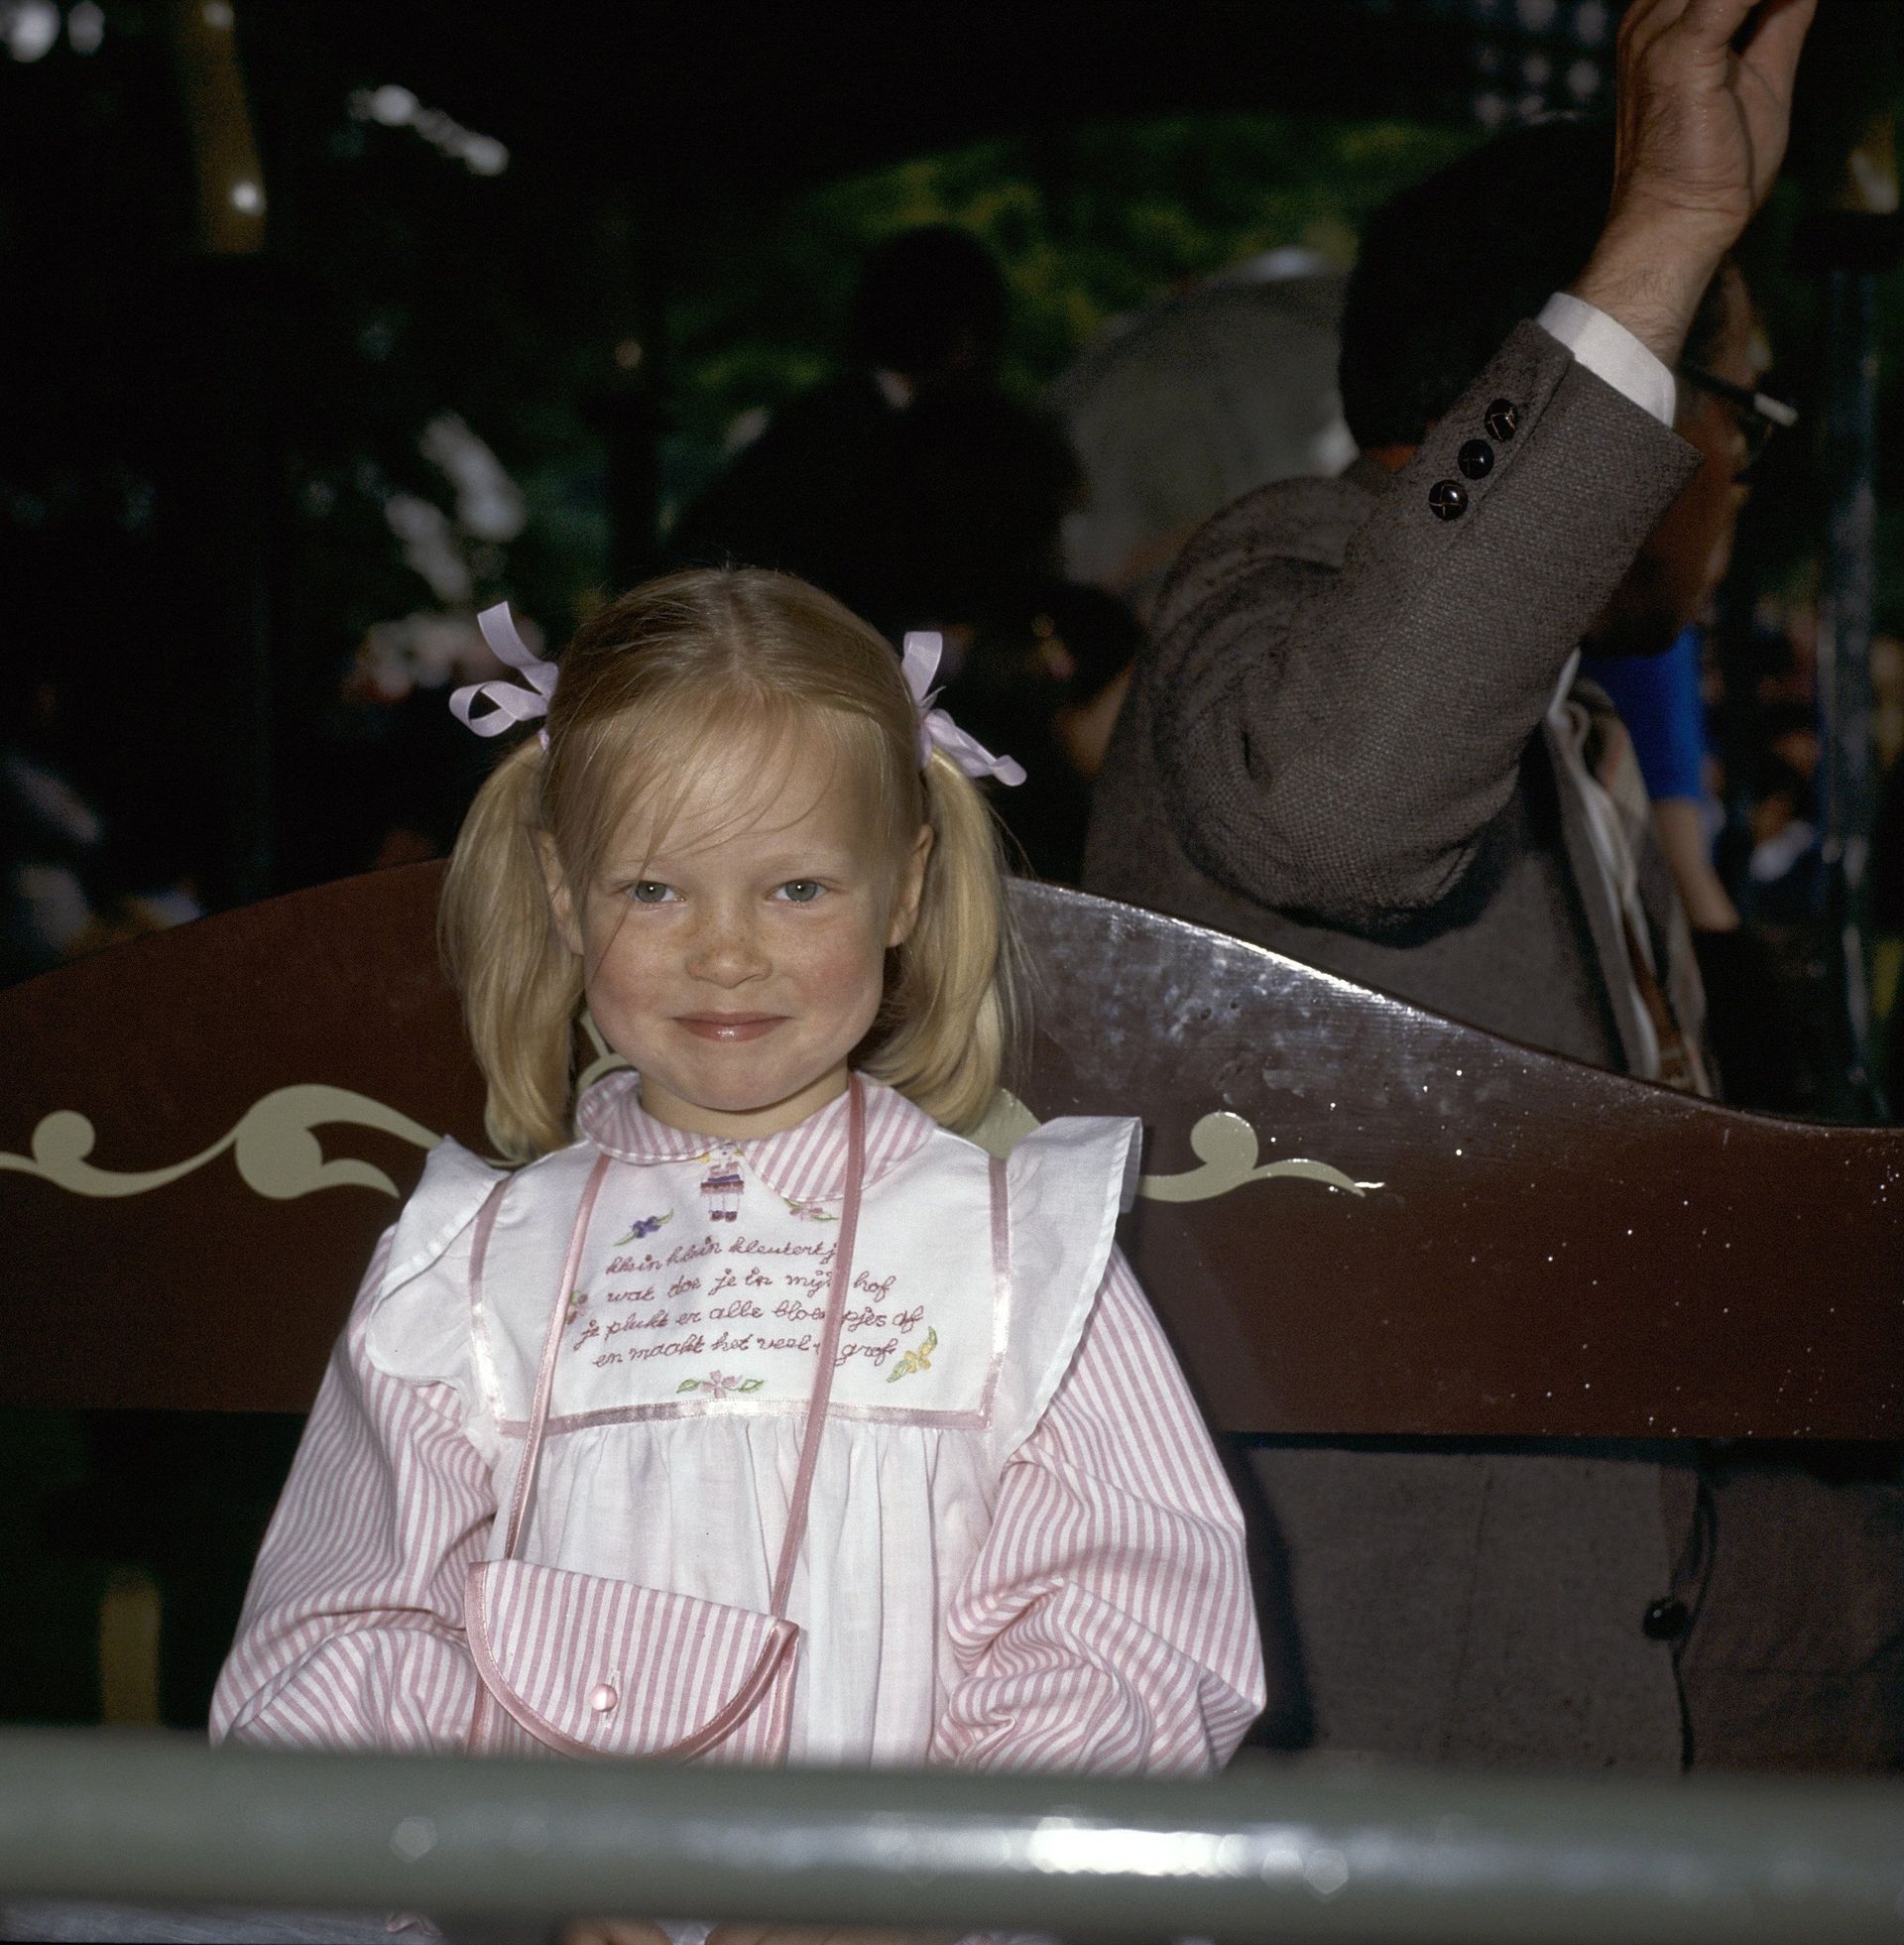 Prinses Carolina tijdens koninginnedag 1980. Op haar jurk staat het versje "klein klein kleutertje, wat doe je in mijn hof" geborduurd.